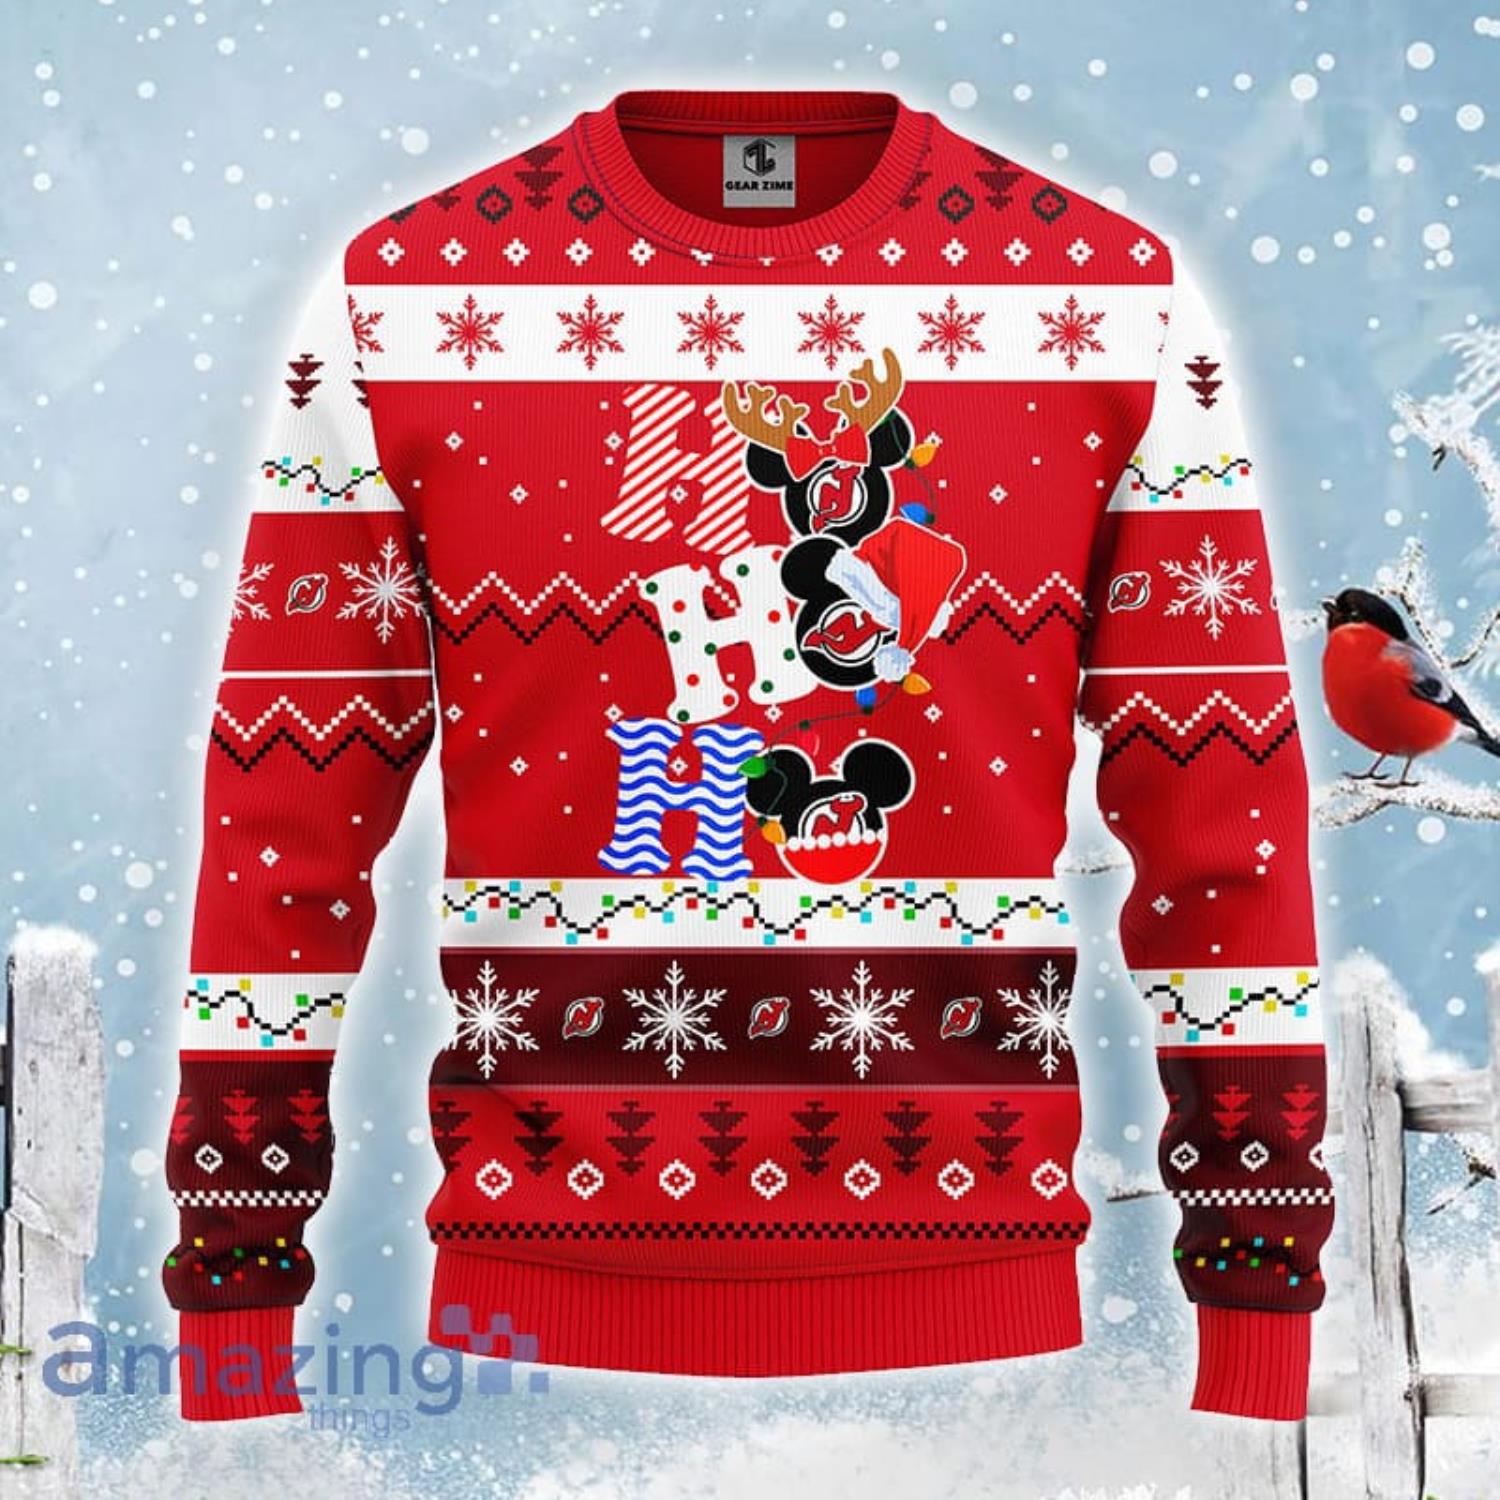 Minnesota Wild NHL Team HoHoHo Mickey Funny Christmas Gift Ugly